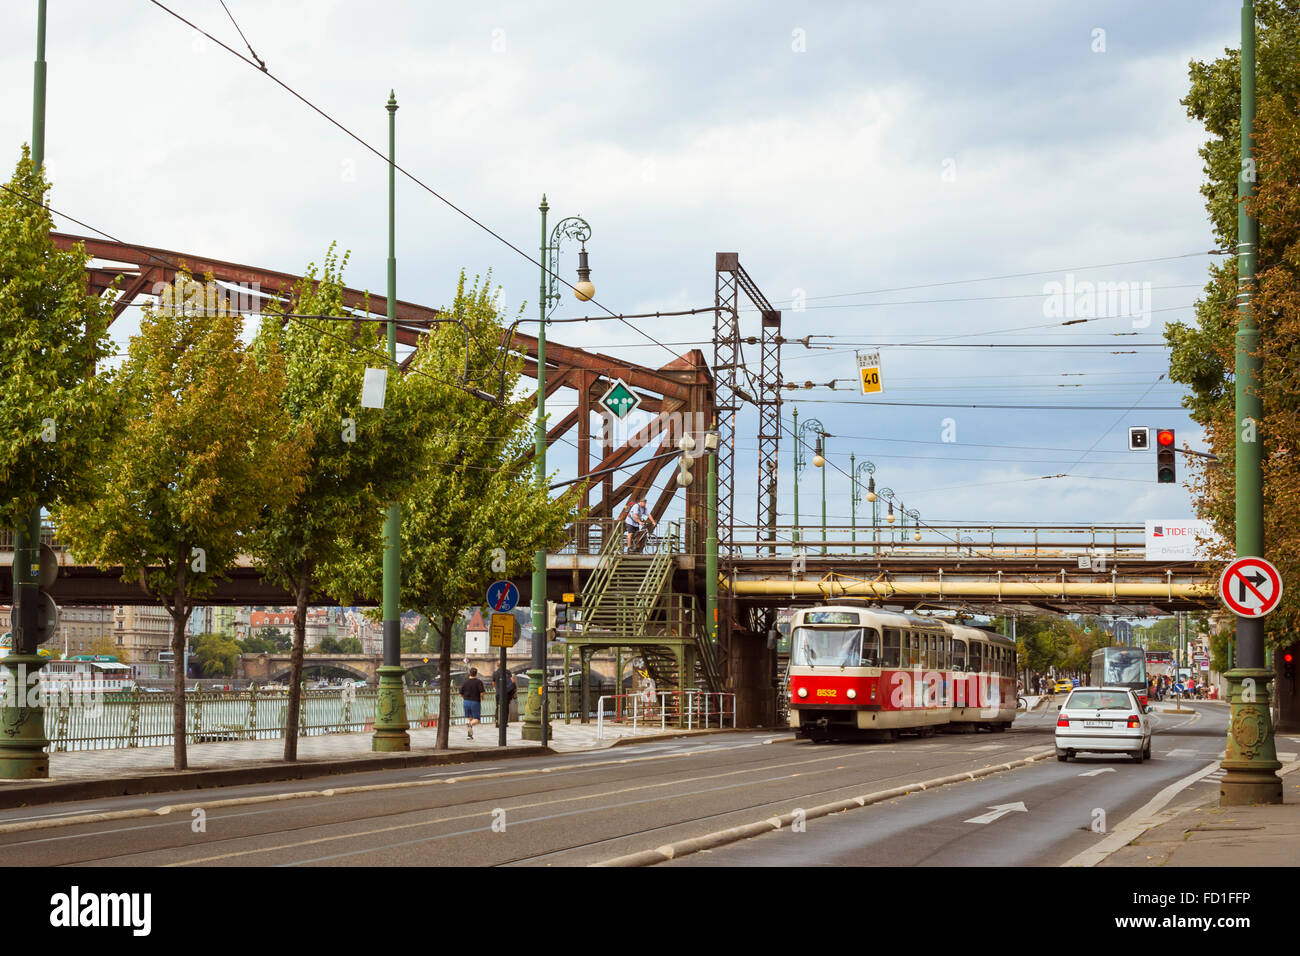 Prag, Tschechische Republik - 28. August 2015: Retro-Straßenbahn Skoda im Hintergrund die Eisenbahnbrücke (Zeleznicni am meisten) Stockfoto